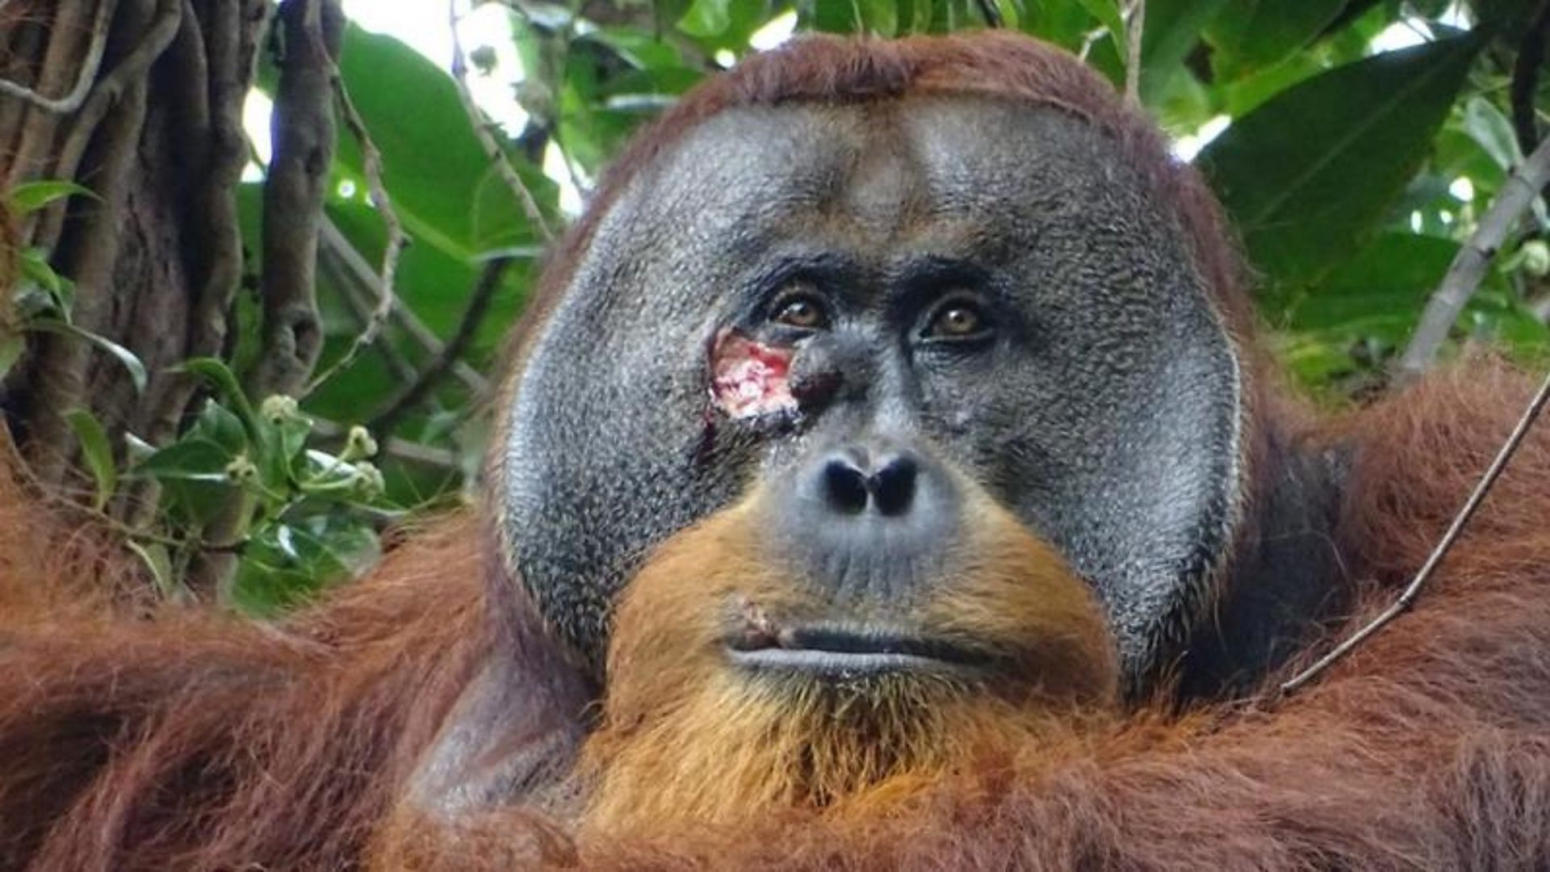 Divlji orangutan viđen kako leči ranu lekovitim biljem